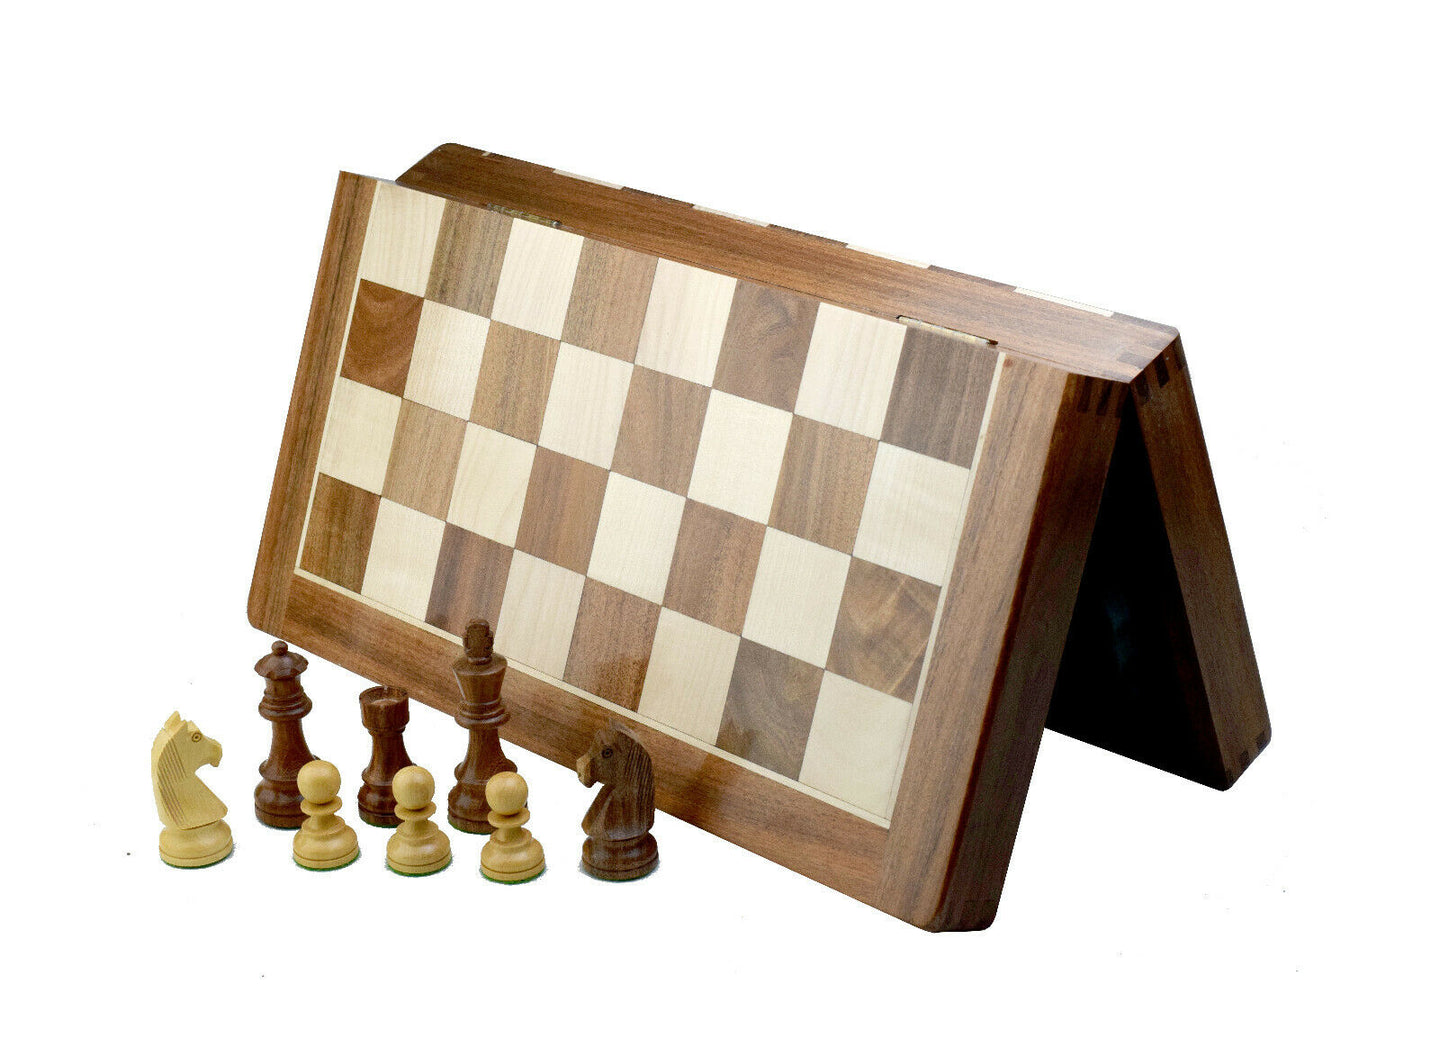 Figury szachowe Staunton 3,75 '' + składane szachownica 18 '' pudełko do przechowywania.